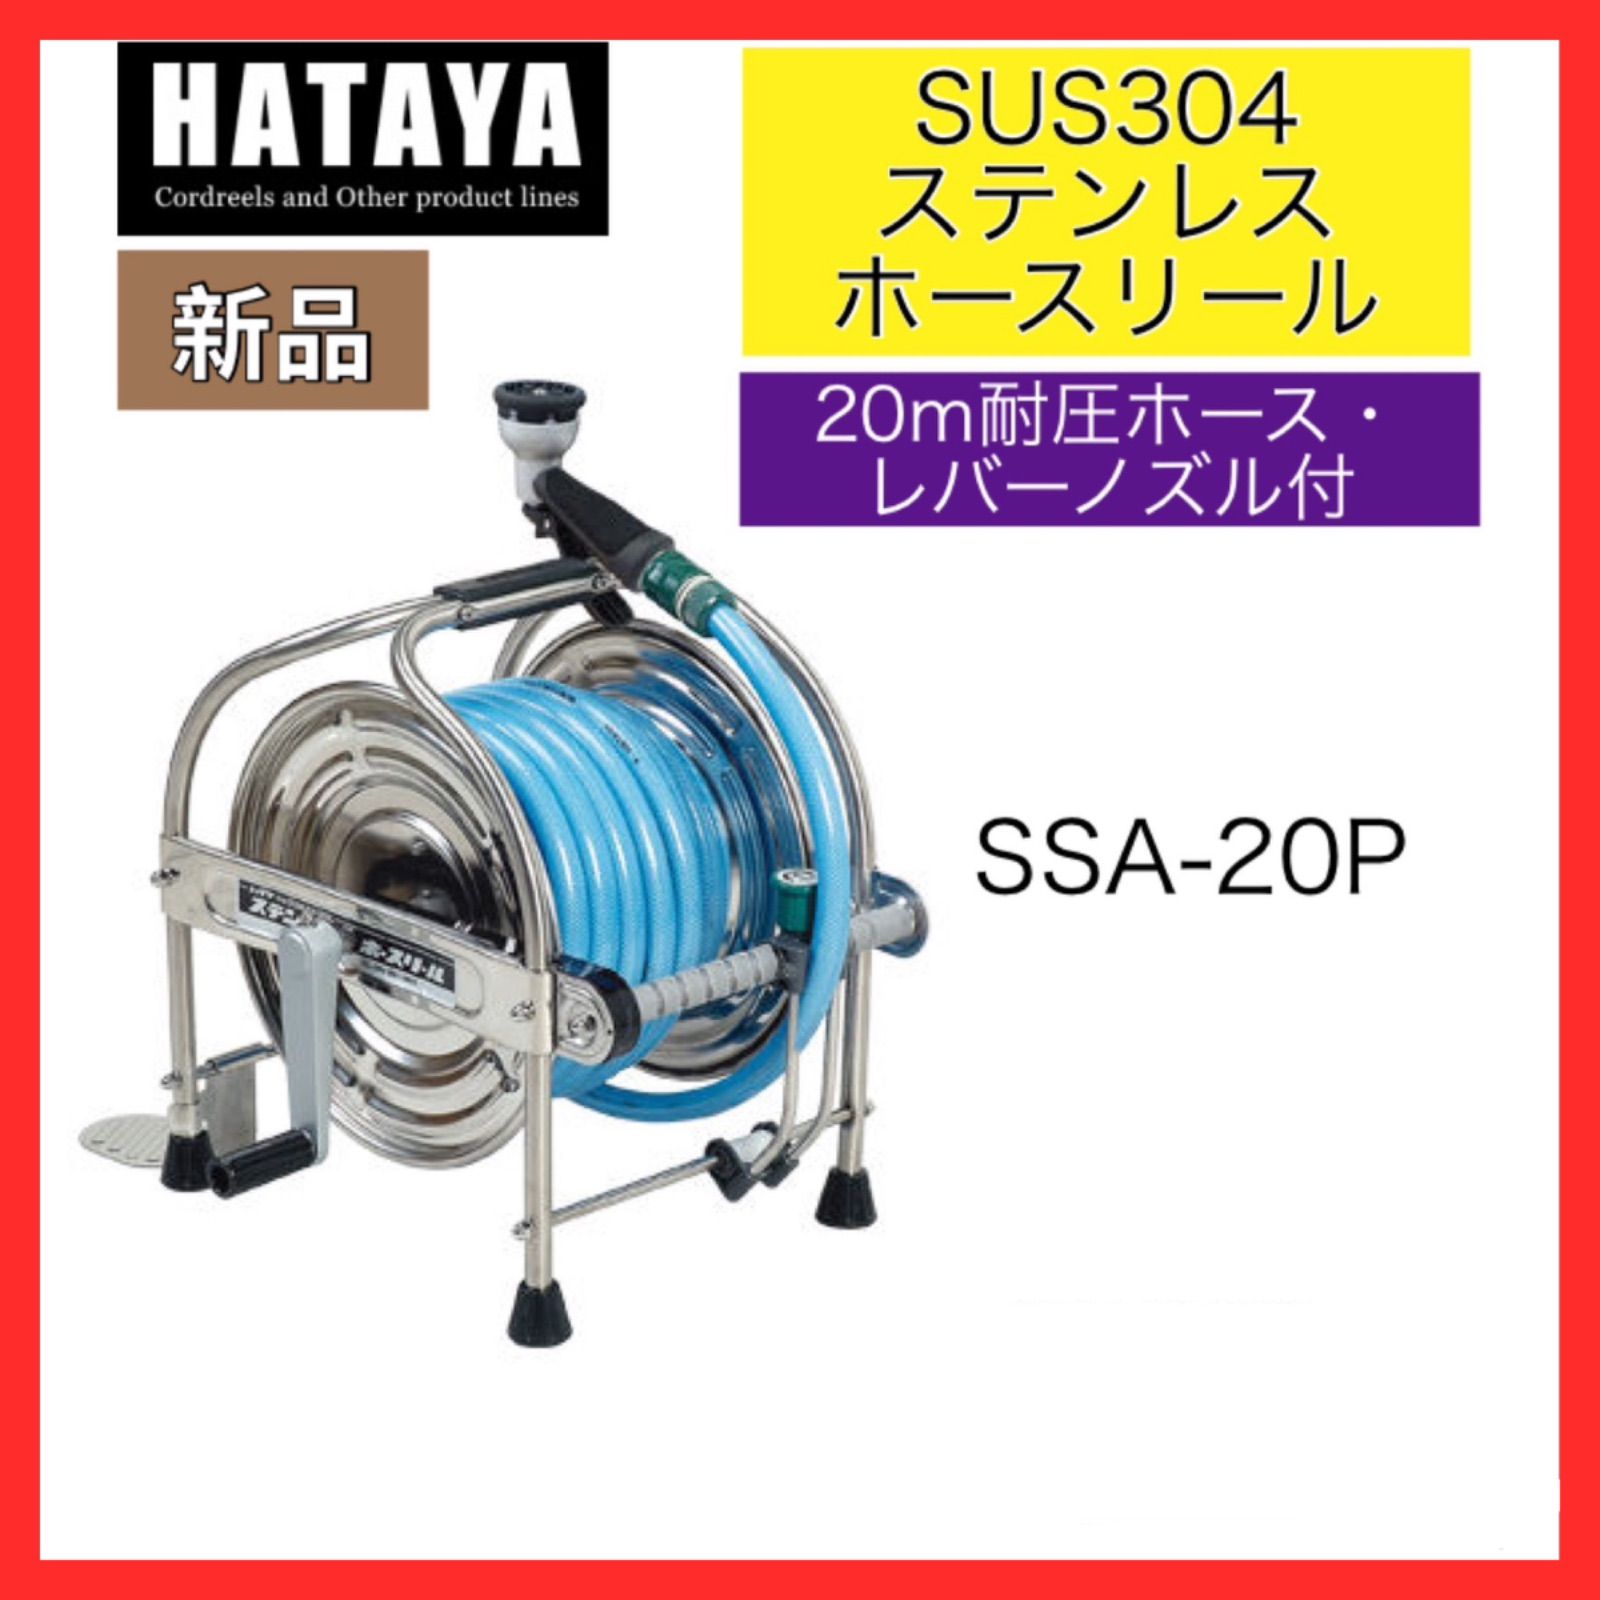 46％割引 ハヤタ HATAYA ステンレス(SUS304) ホースリール 20m耐圧ホース・レバーノズル・一次側ホース1.5m付 SSA-20P 